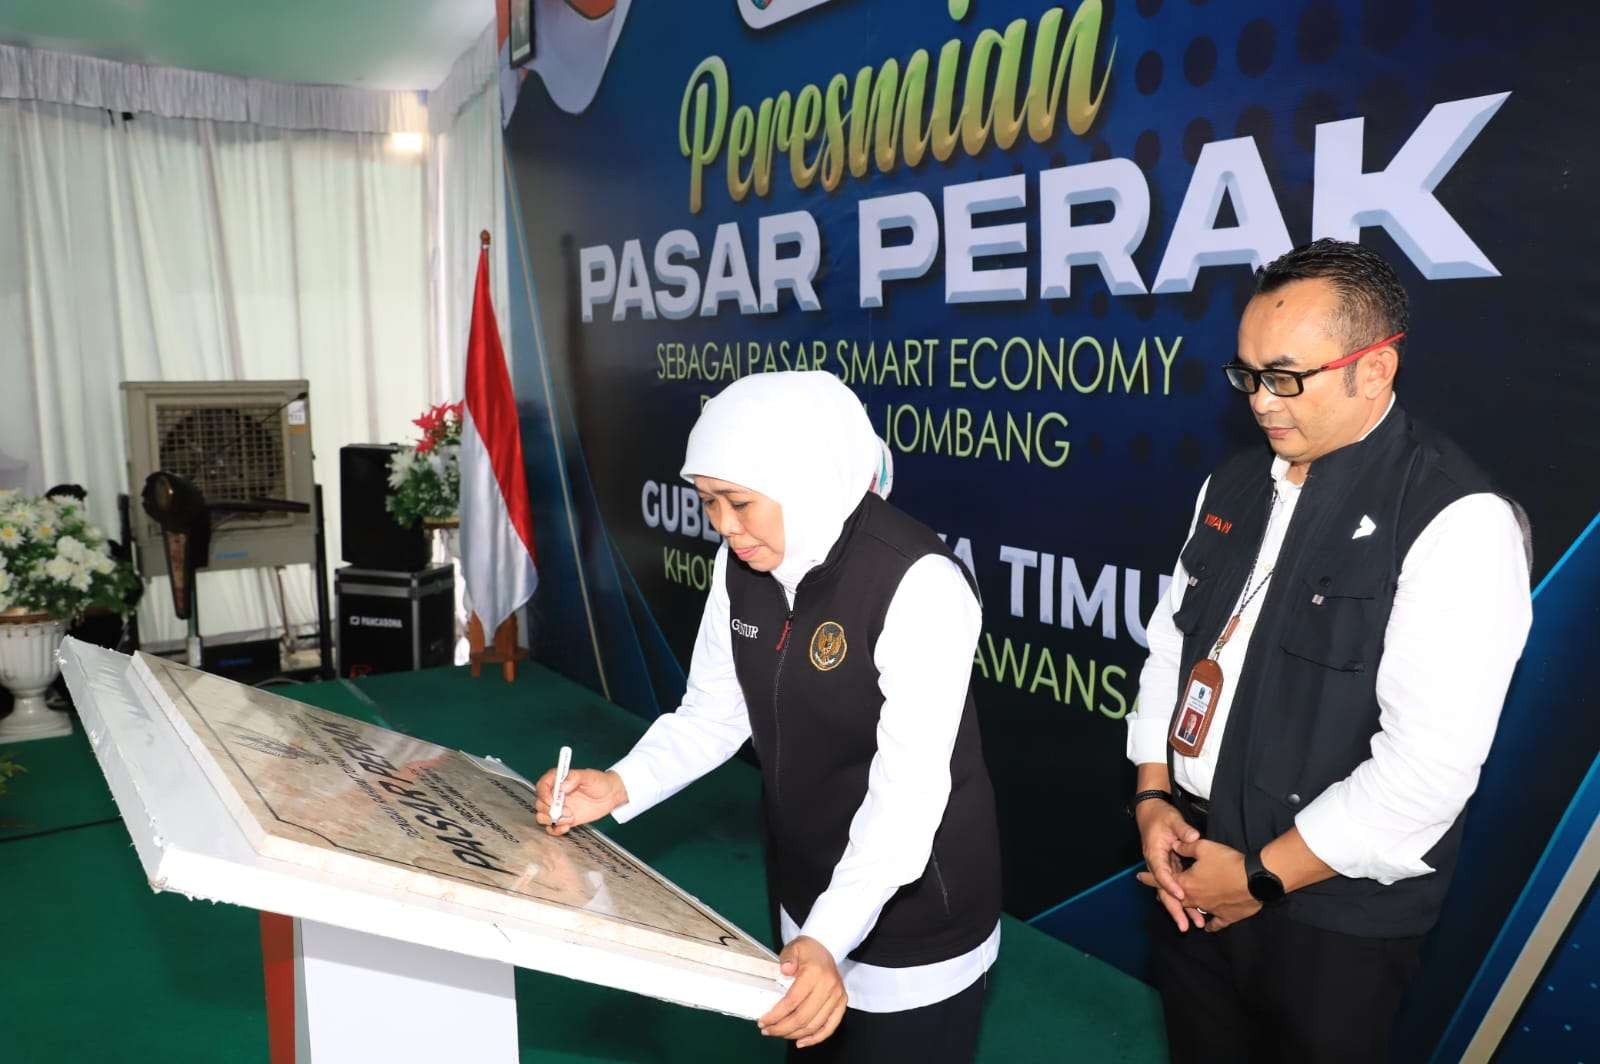 Gubernur Jawa Timur, Khofifah Indar Parawansa meresmikan Pasar Perak Jombang, Senin 6 Maret 2023. (Foto: Pemprov Jatim)